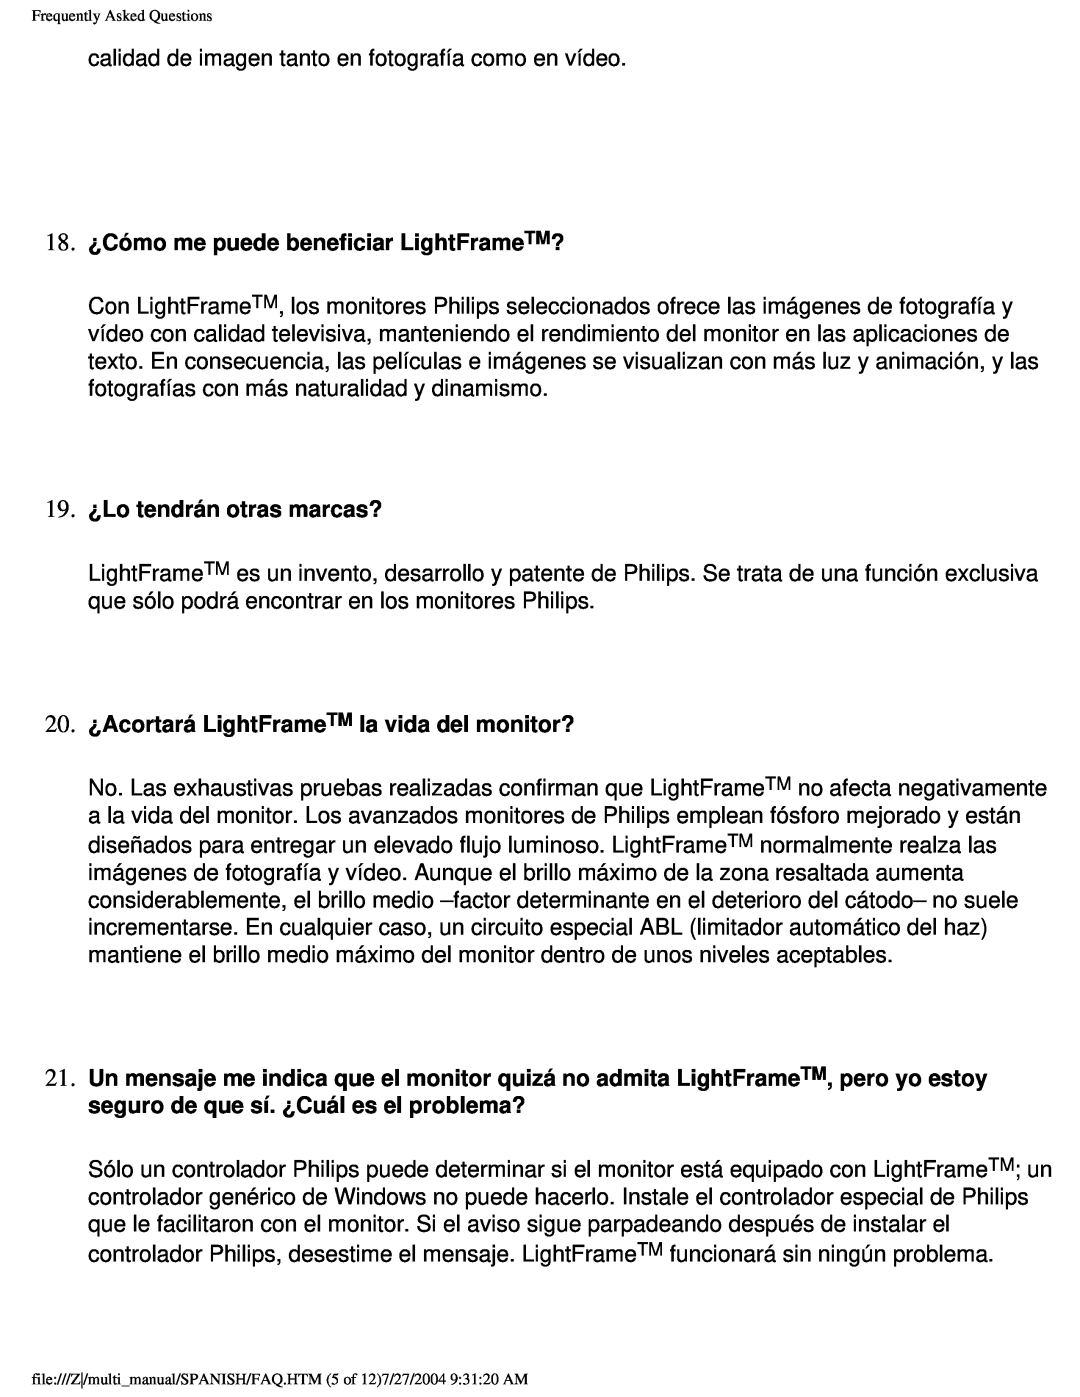 Philips 107B user manual 18. ¿Cómo me puede beneficiar LightFrameTM?, 19. ¿Lo tendrán otras marcas? 